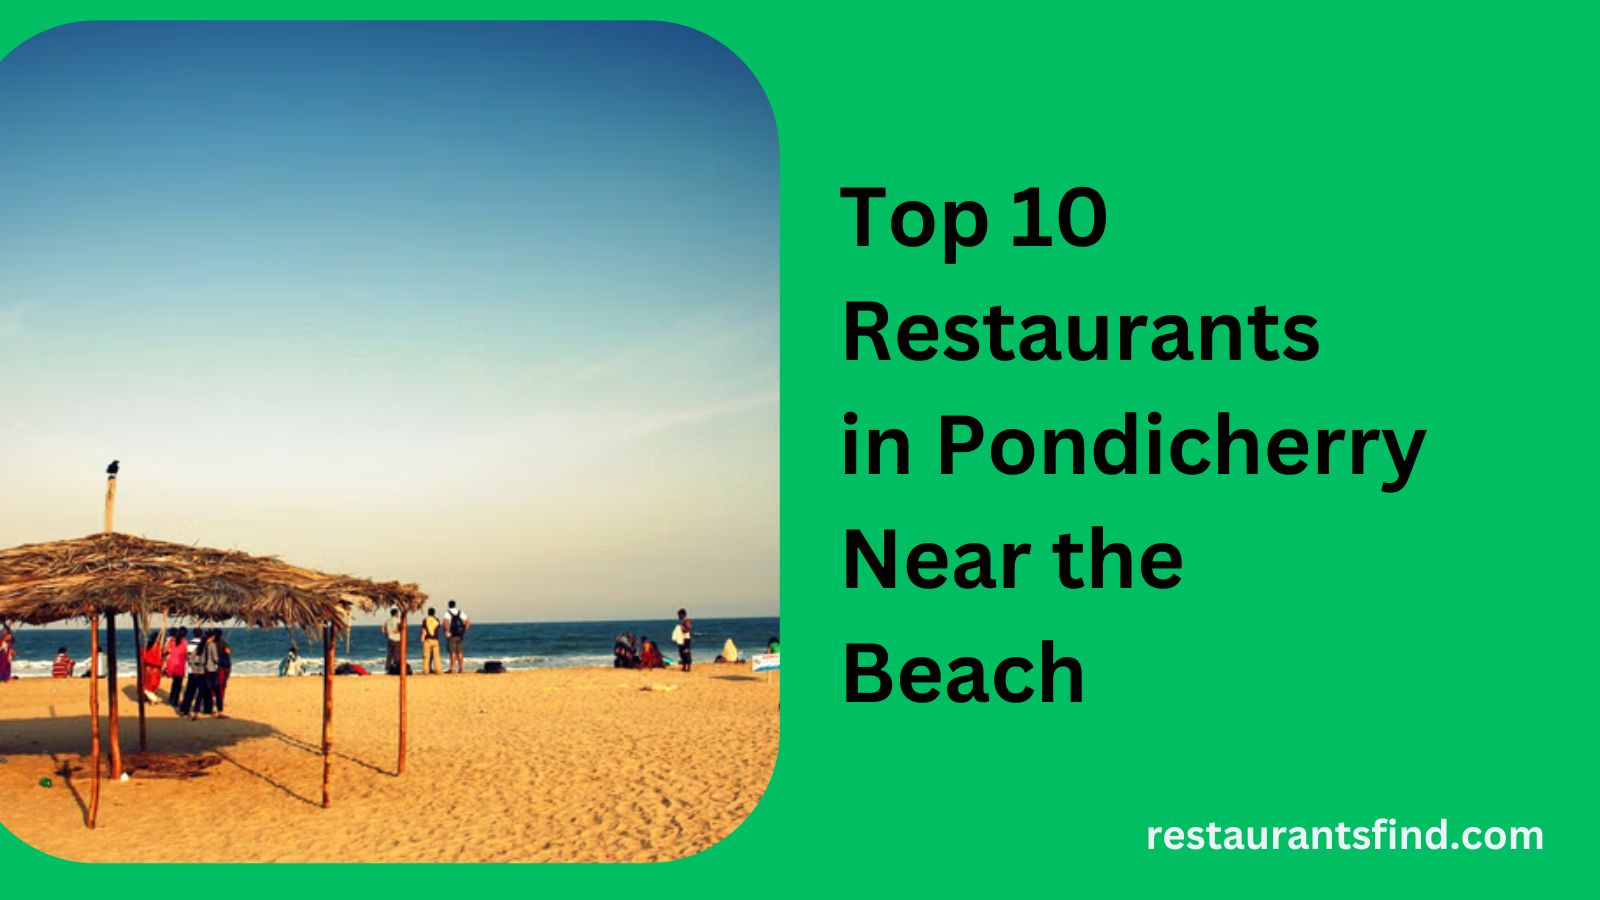 Best Restaurants in Pondicherry Near the Beach